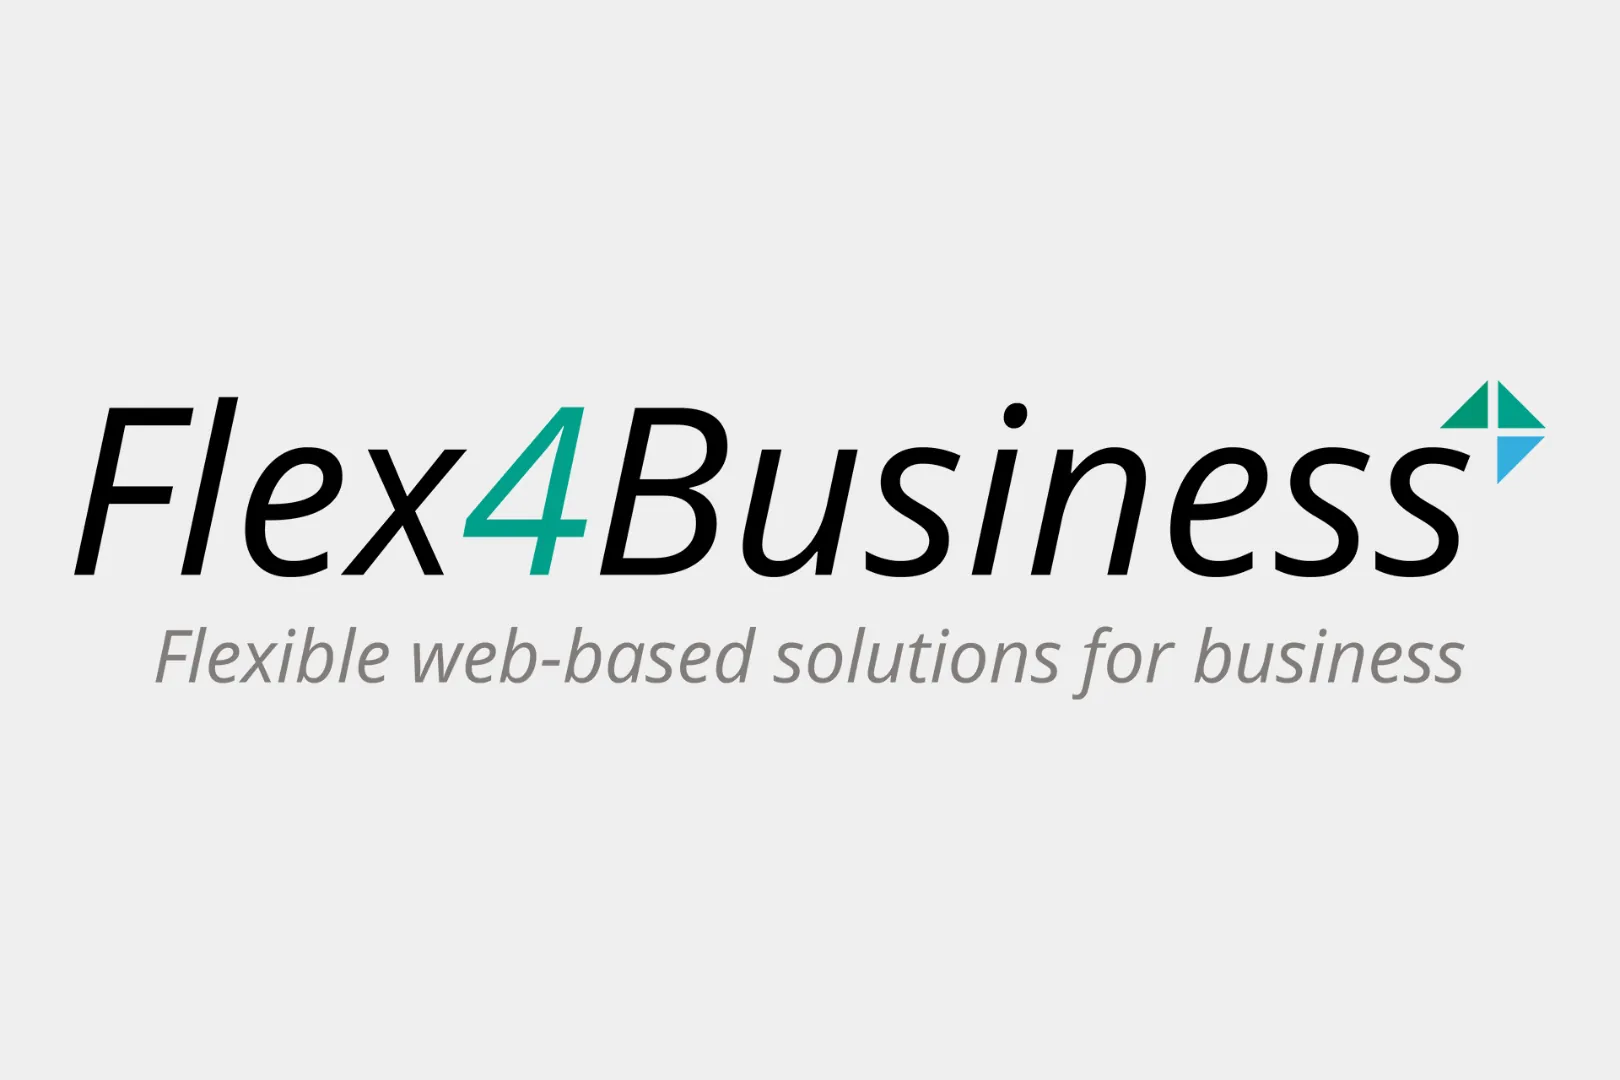 Flex4Business logo